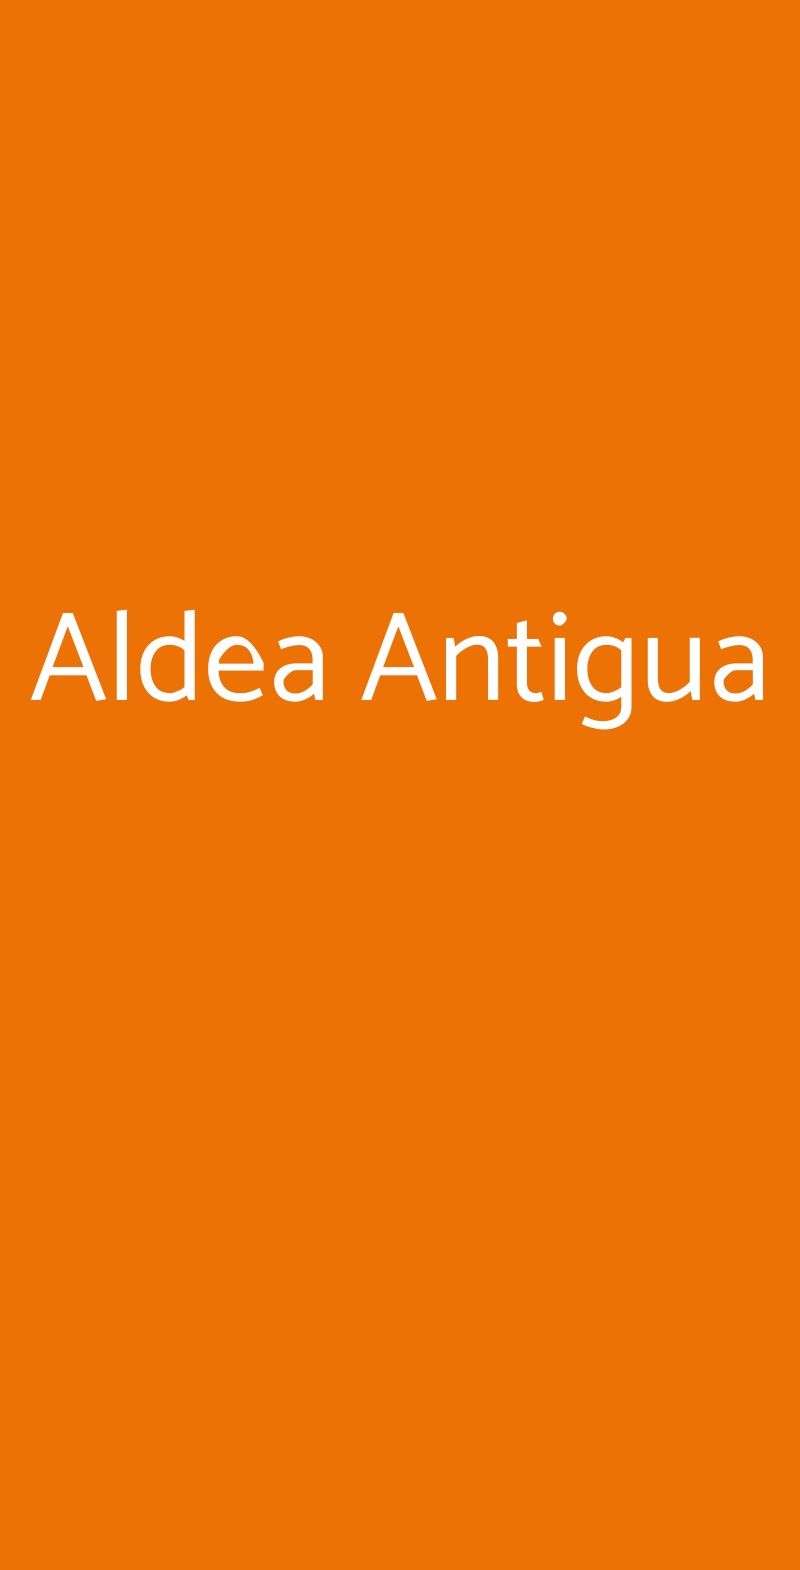 Aldea Antigua Carate Brianza menù 1 pagina